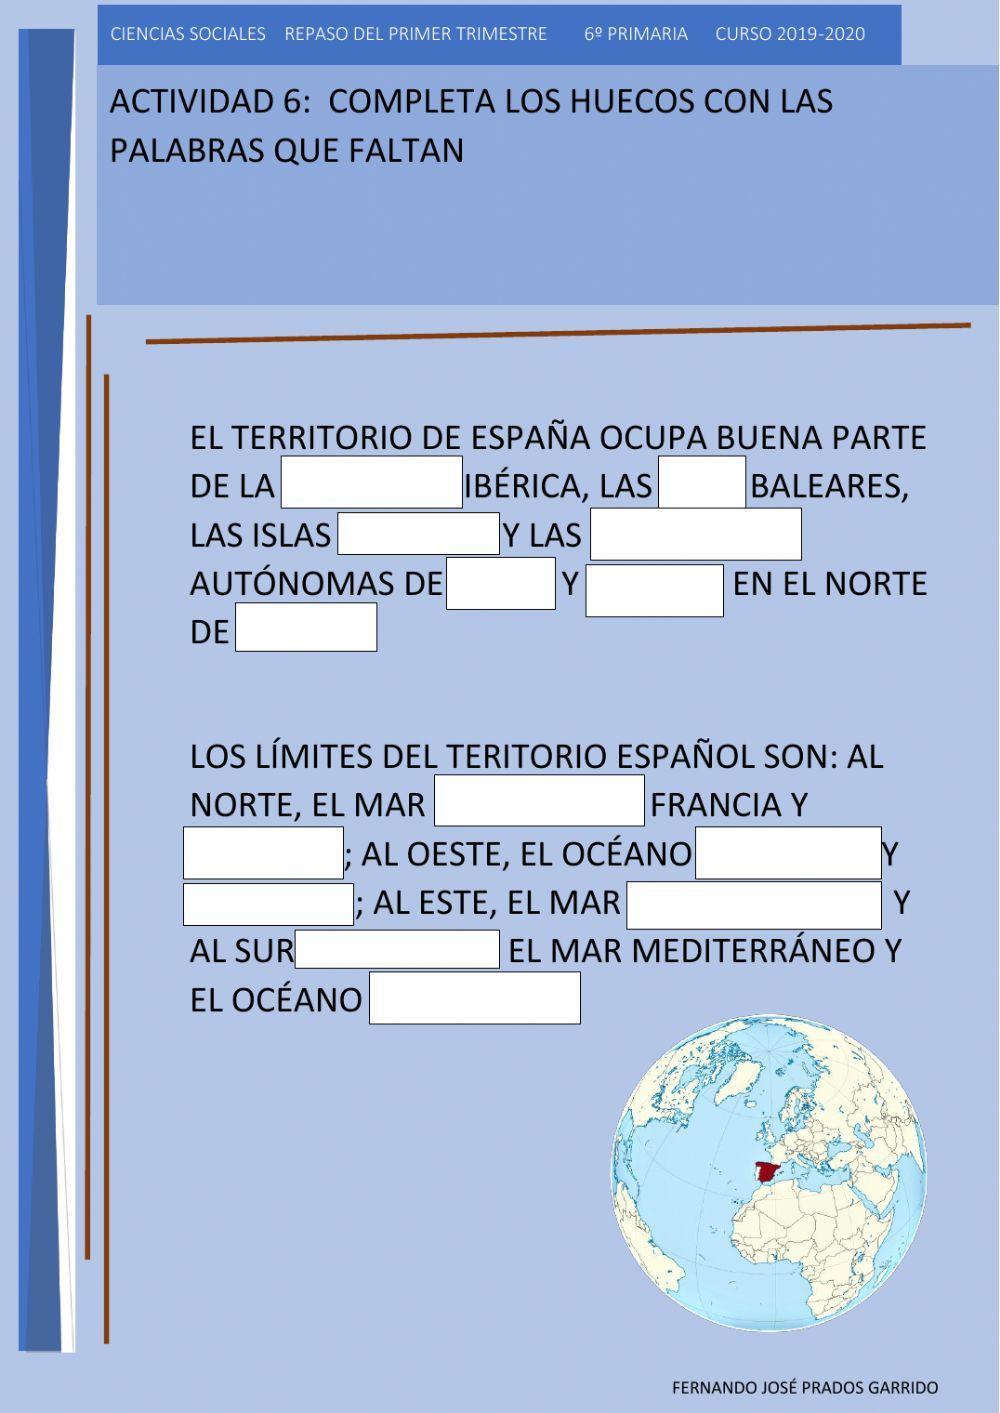 6 repaso sociales Límites geográficos de España